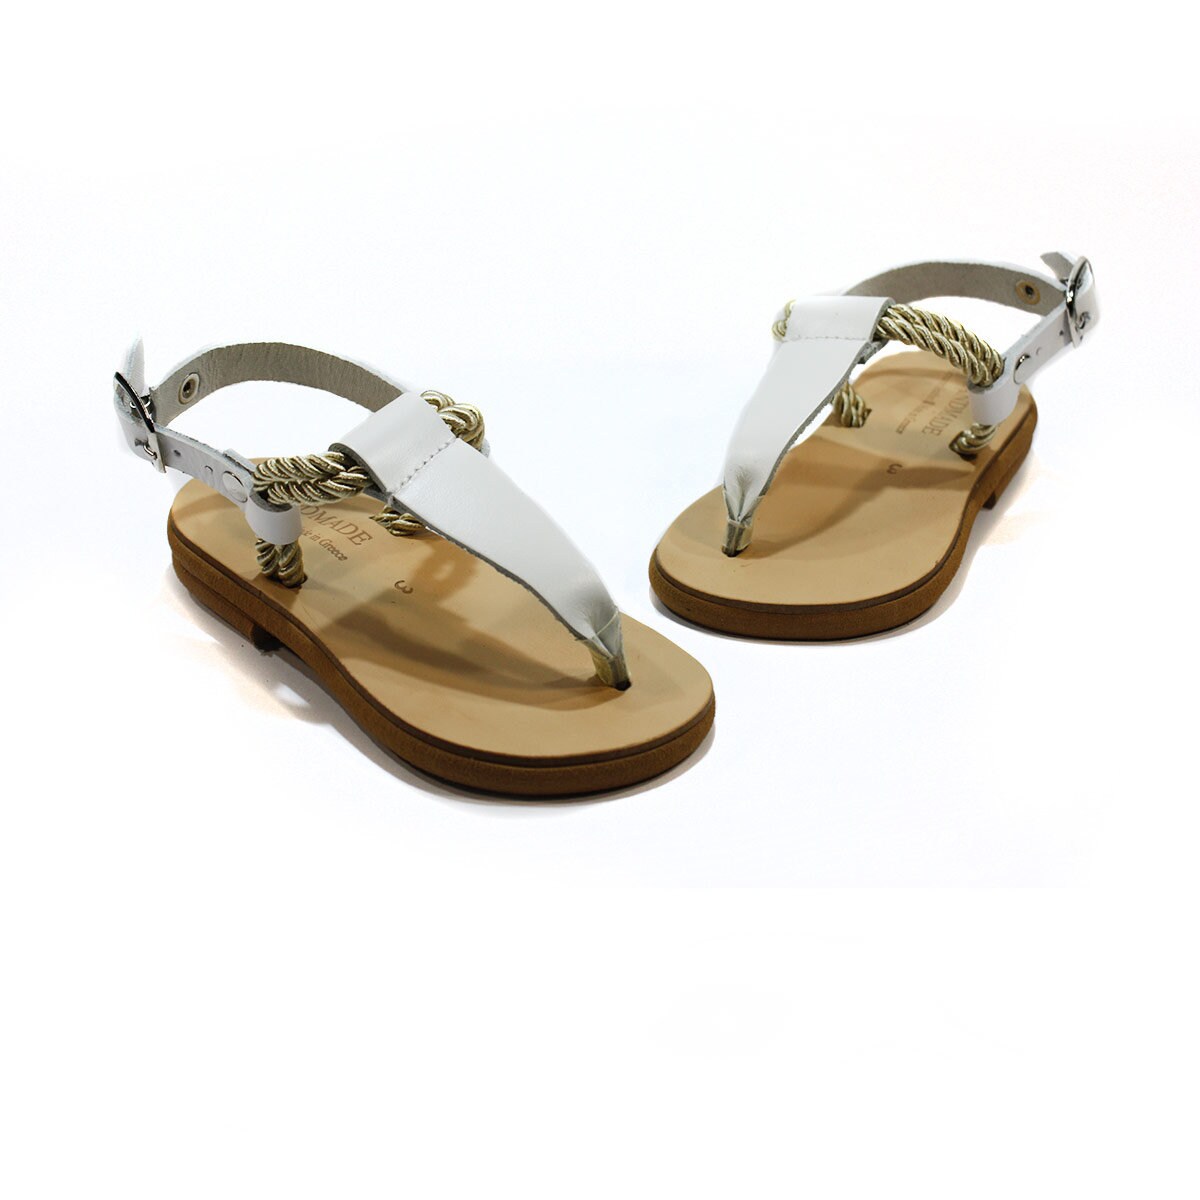 Leather Handmade Greek Sandals for Kids/baby Girl Summer - Etsy